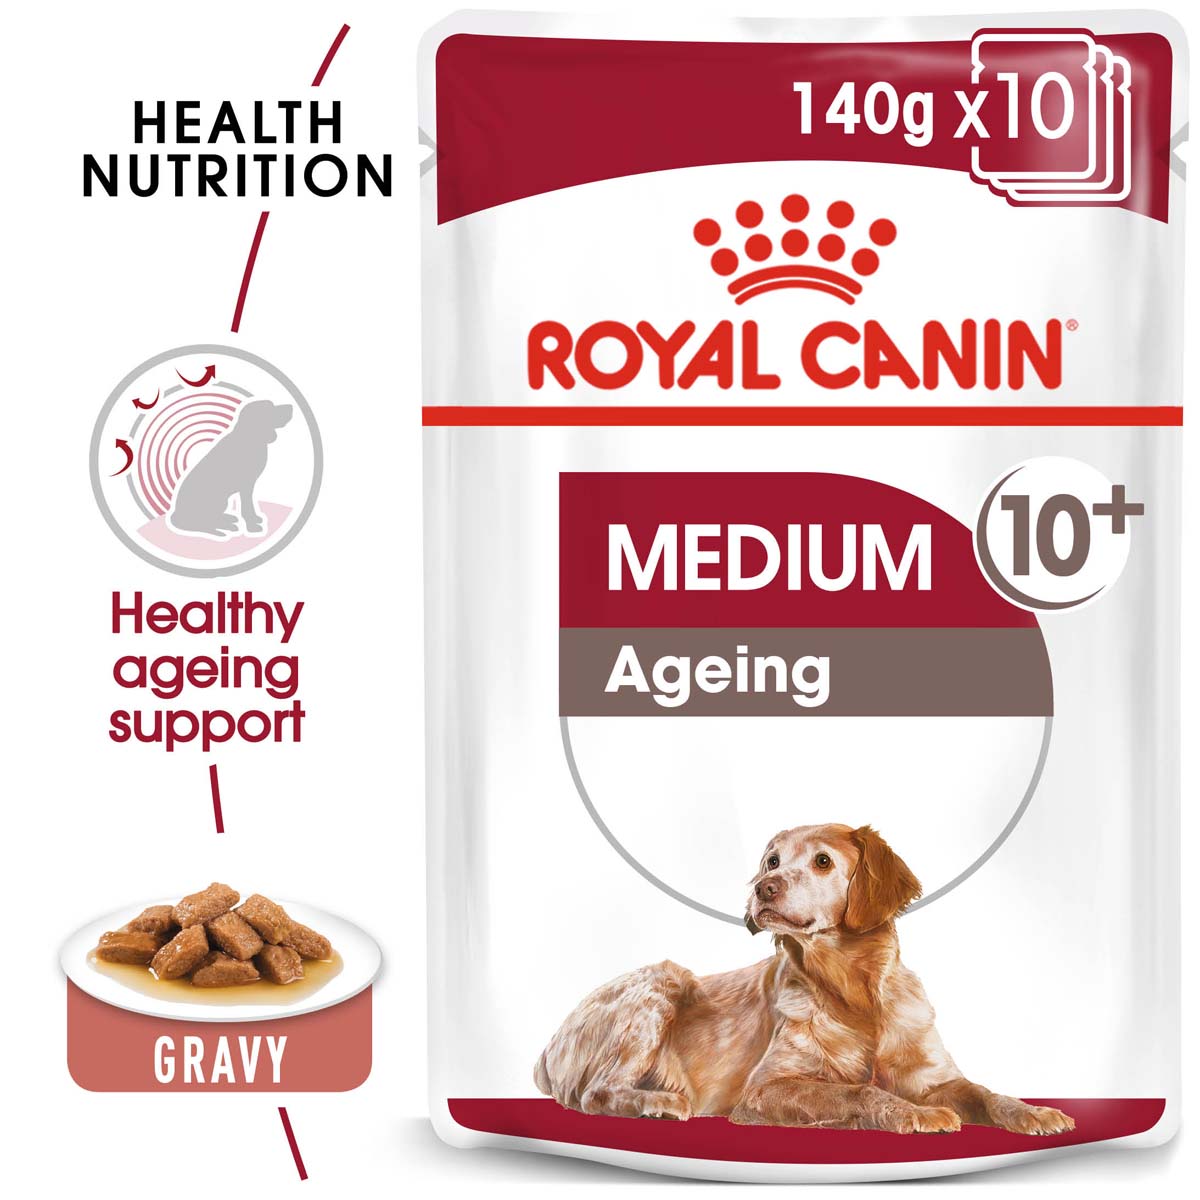 ROYAL CANIN MEDIUM AGEING 10+ mokré krmivo pro středně velké psy